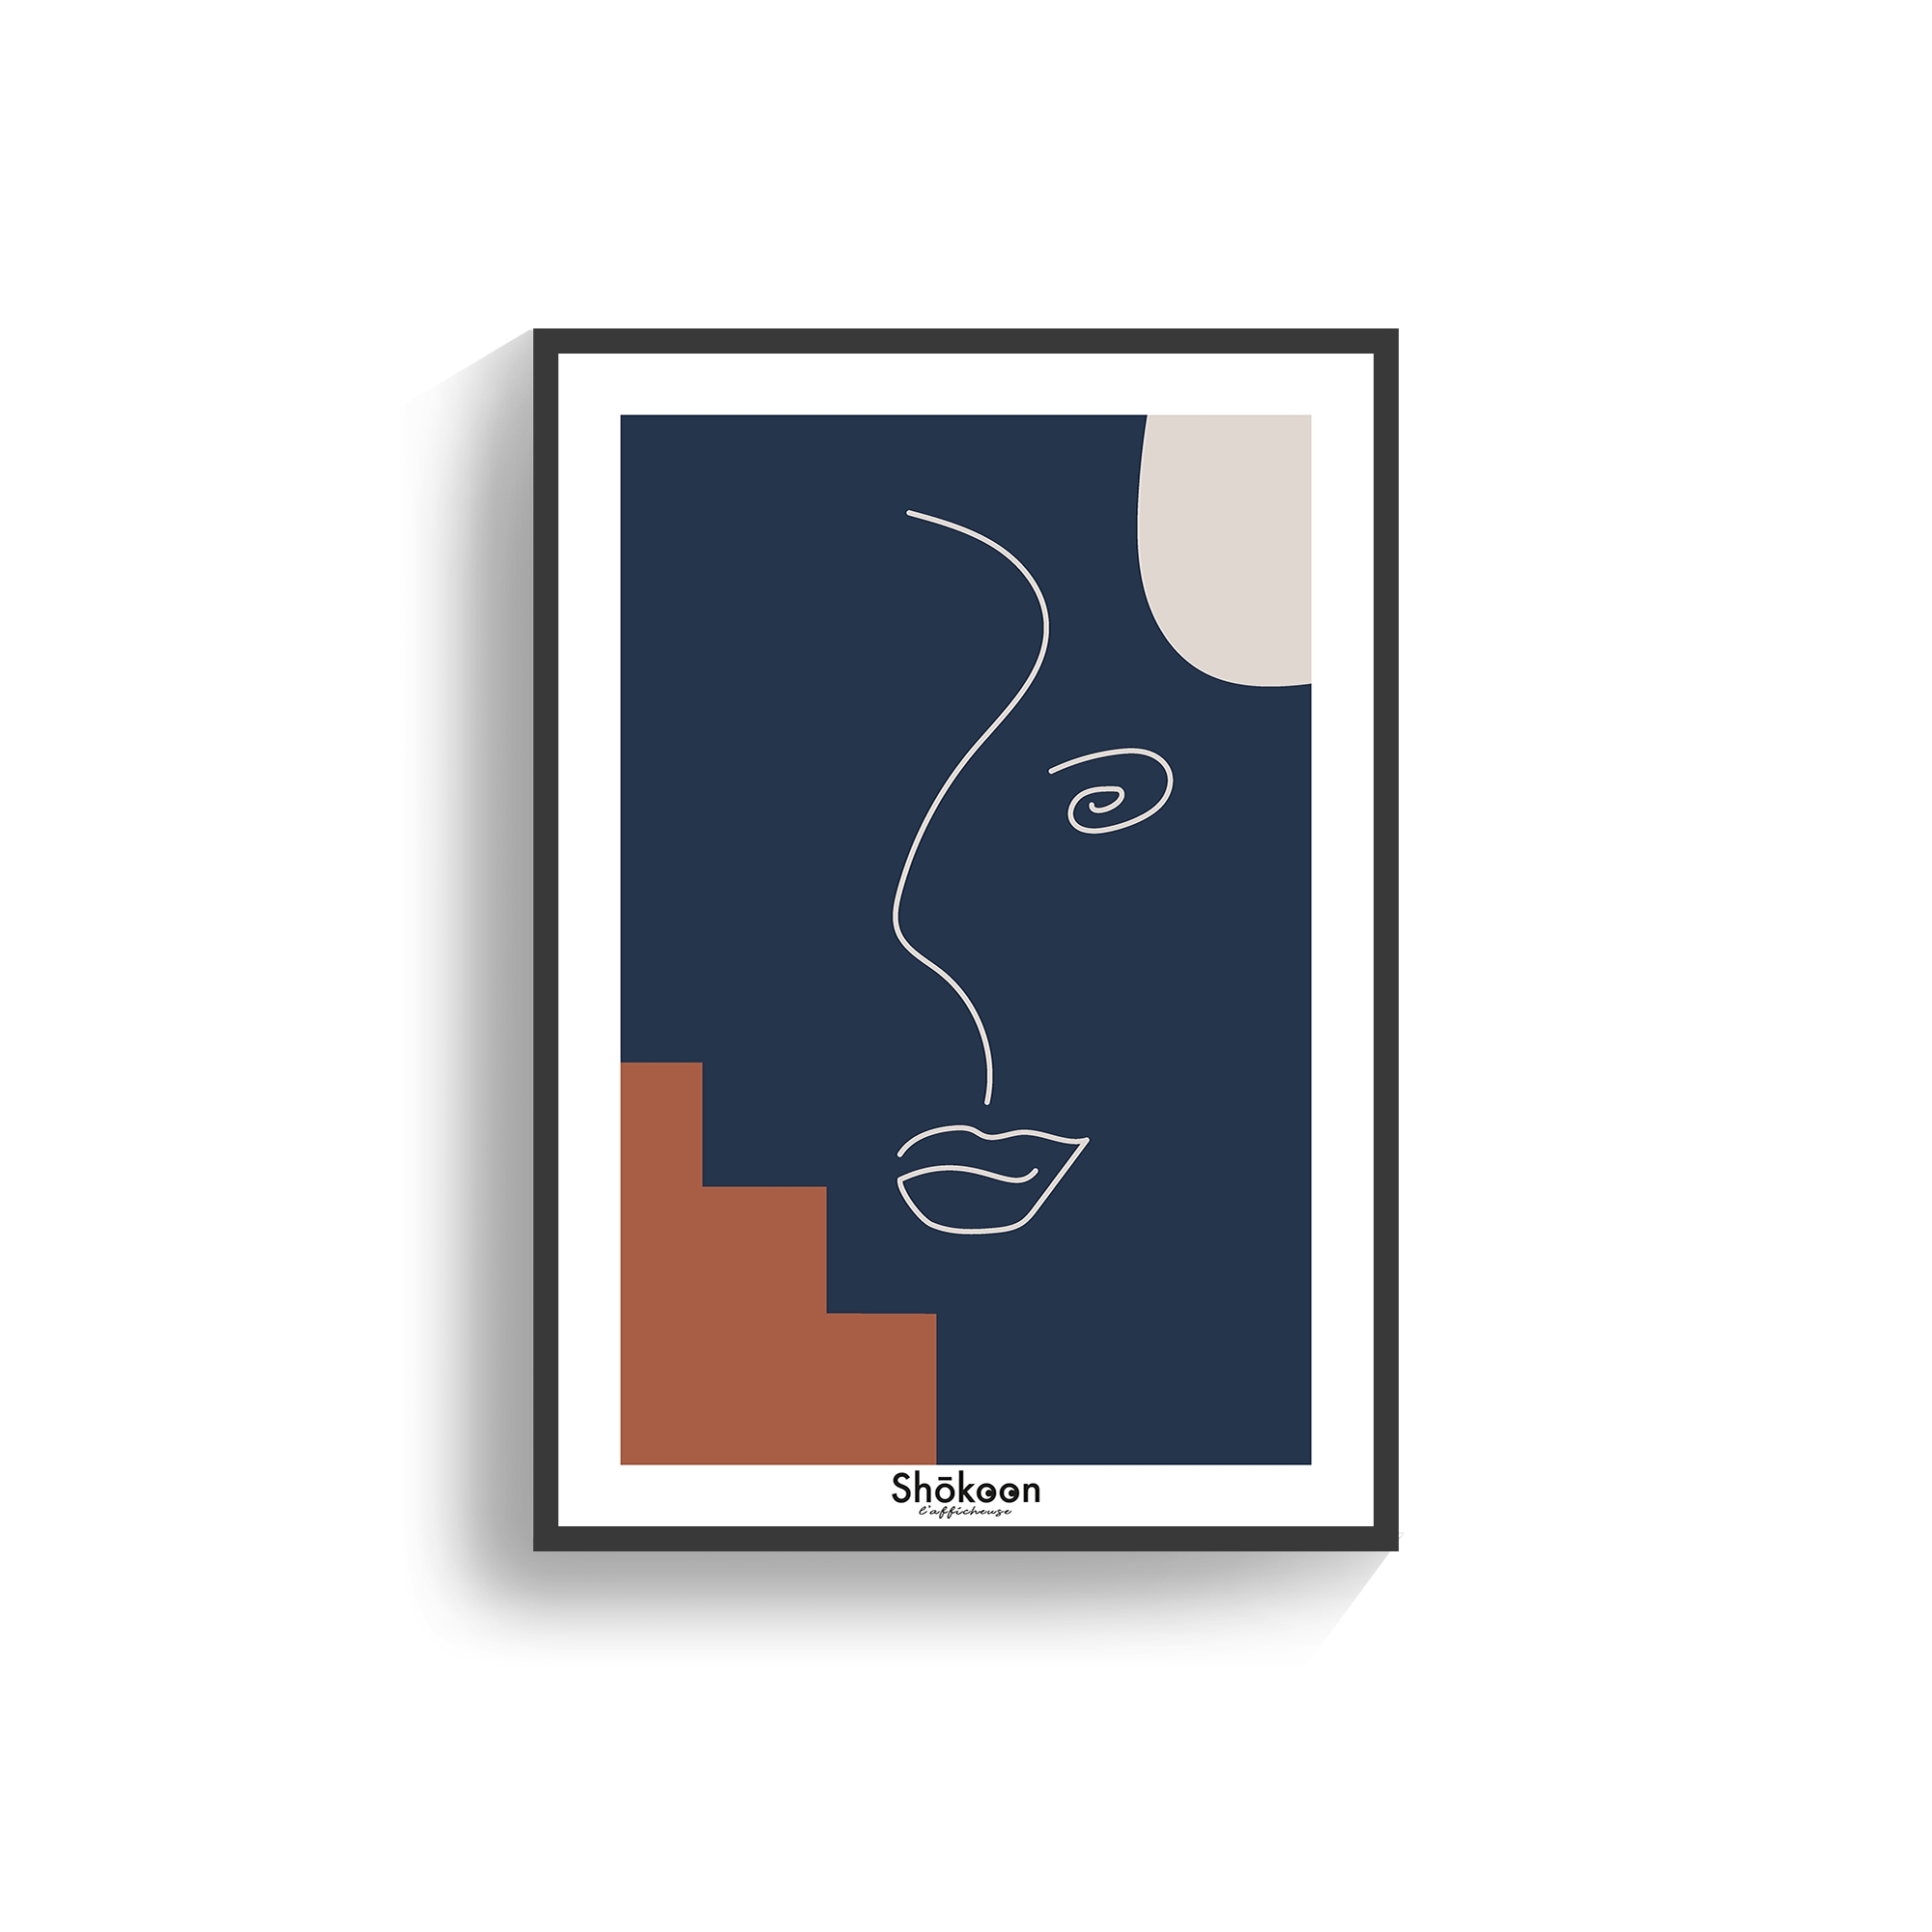 affiche-poster-forme-geometrique-abstraite-visage-lineart-terracotta-bleu-beige-shokoonlafficheuse.com